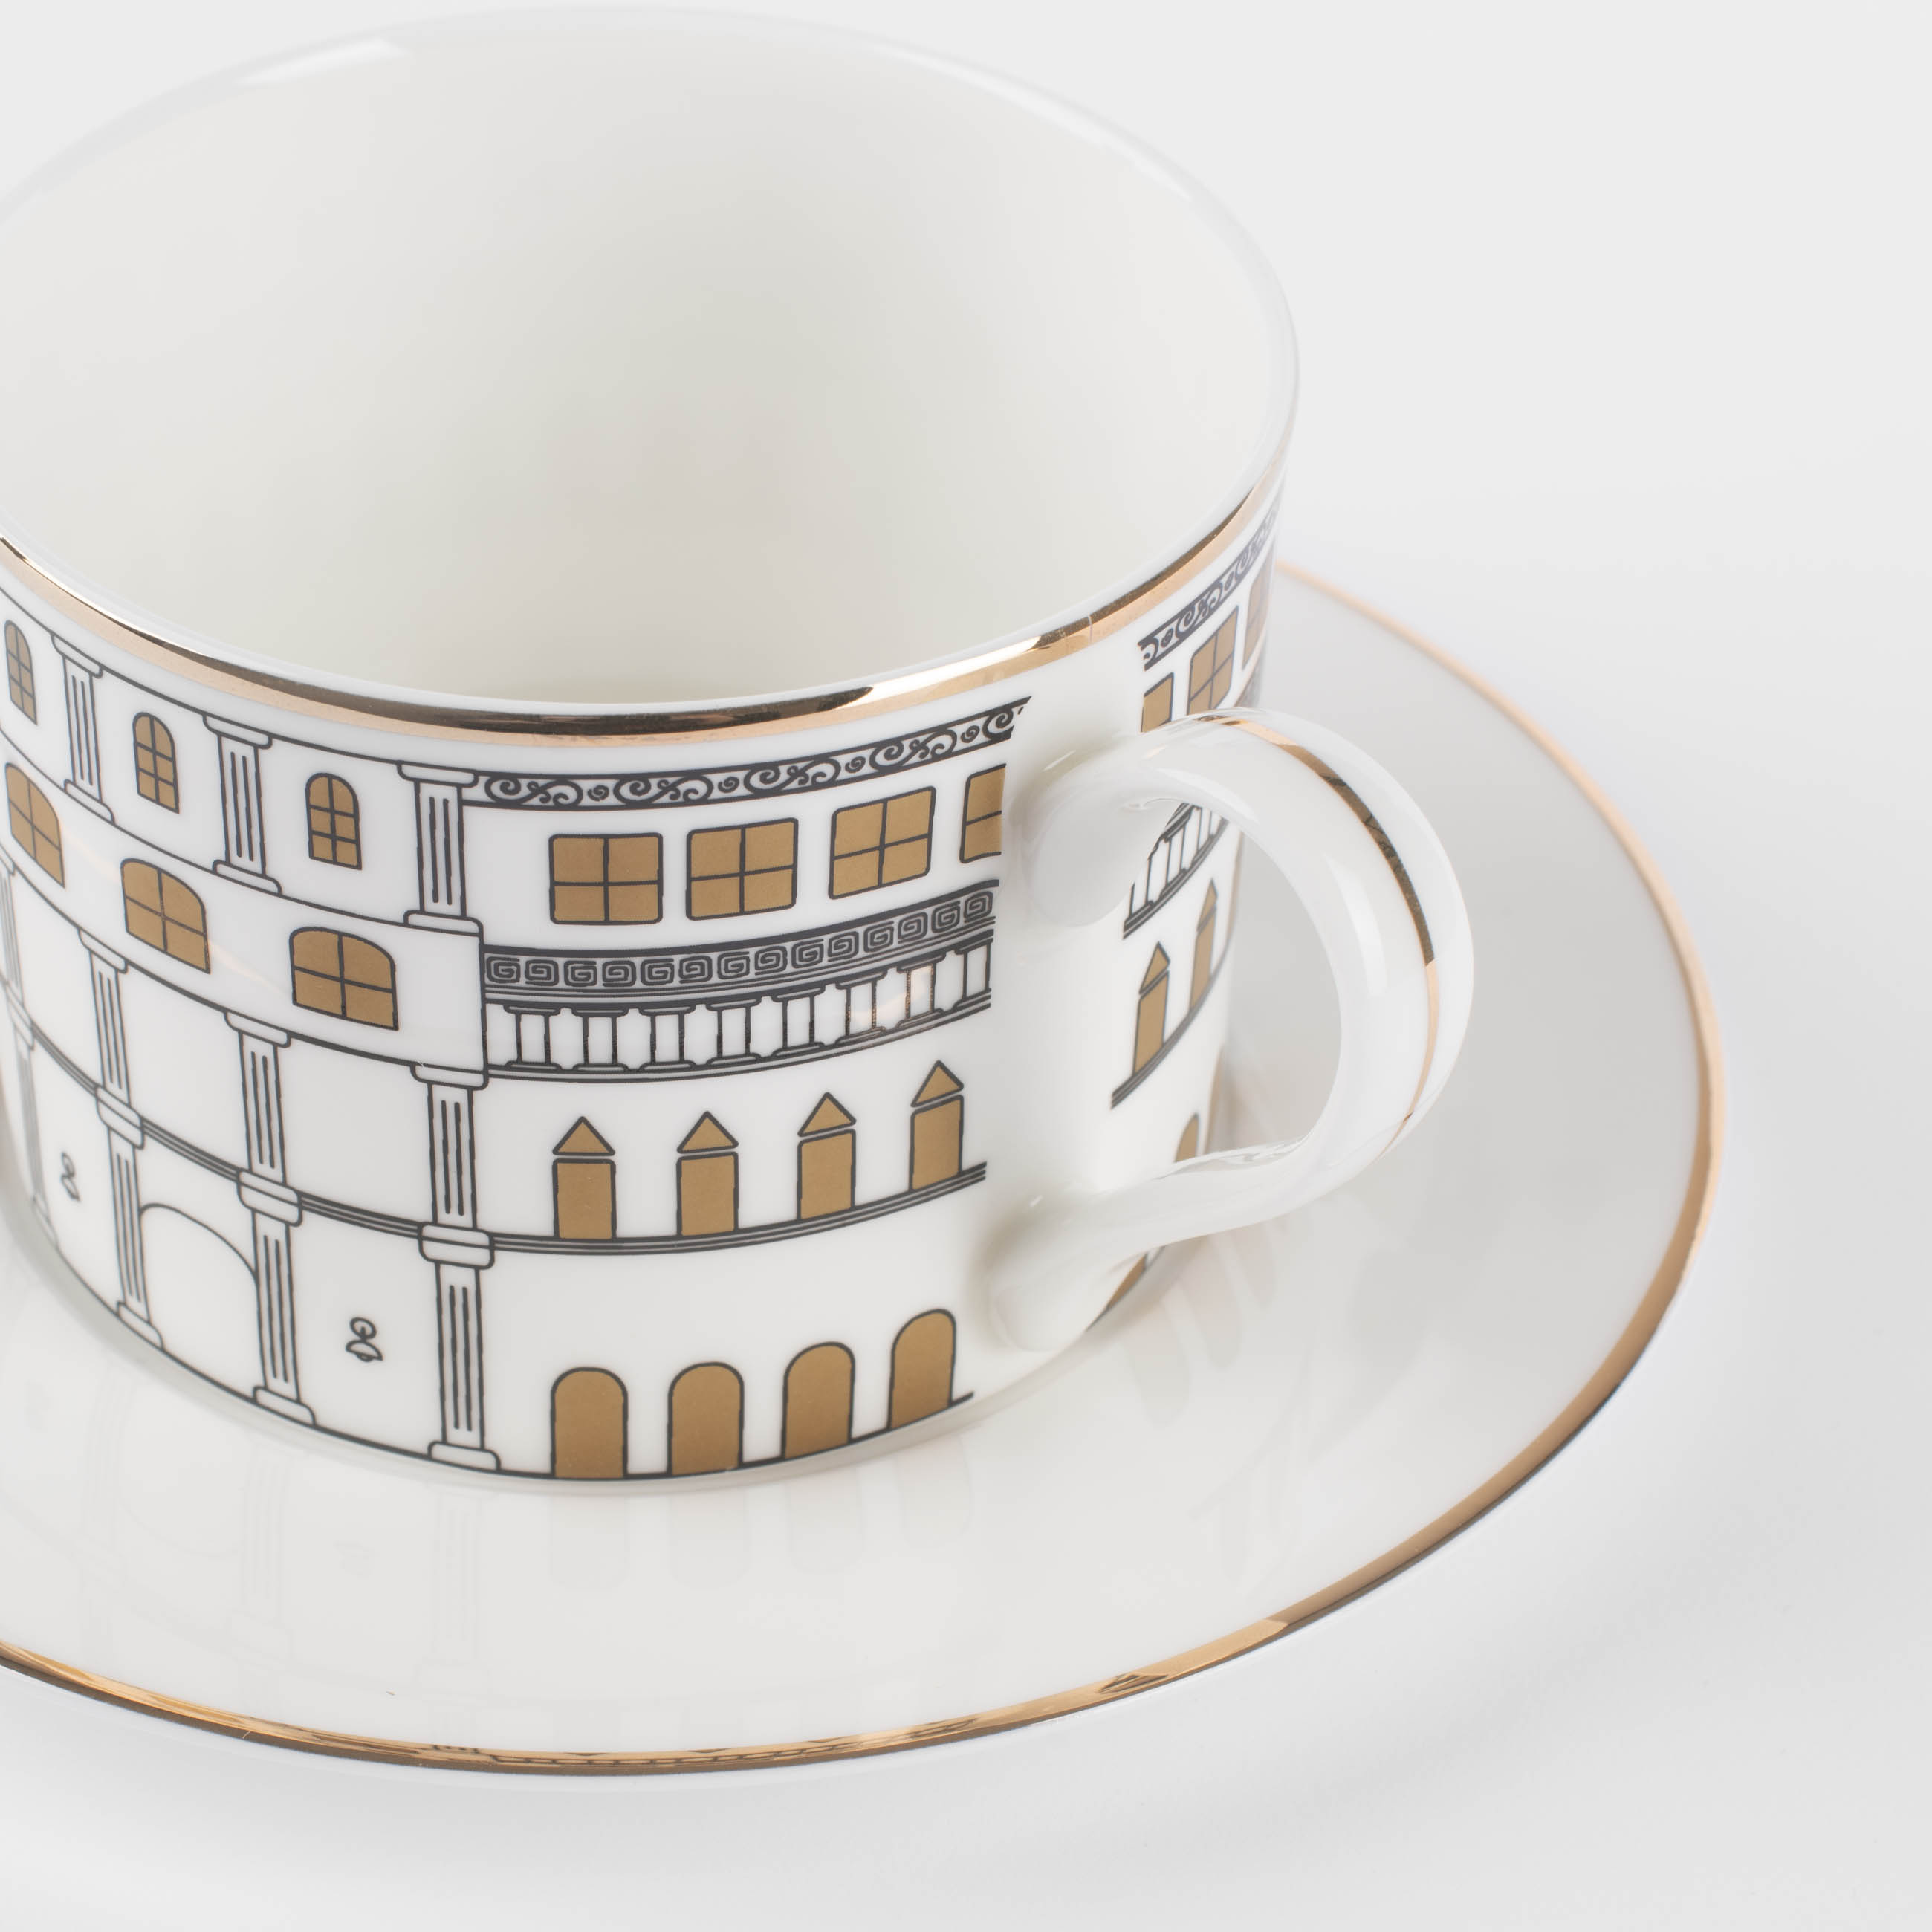 Пара чайная, 1 перс, 2 пр, 330 мл, фарфор F, белая, с золотистым кантом, Дом, House изображение № 3